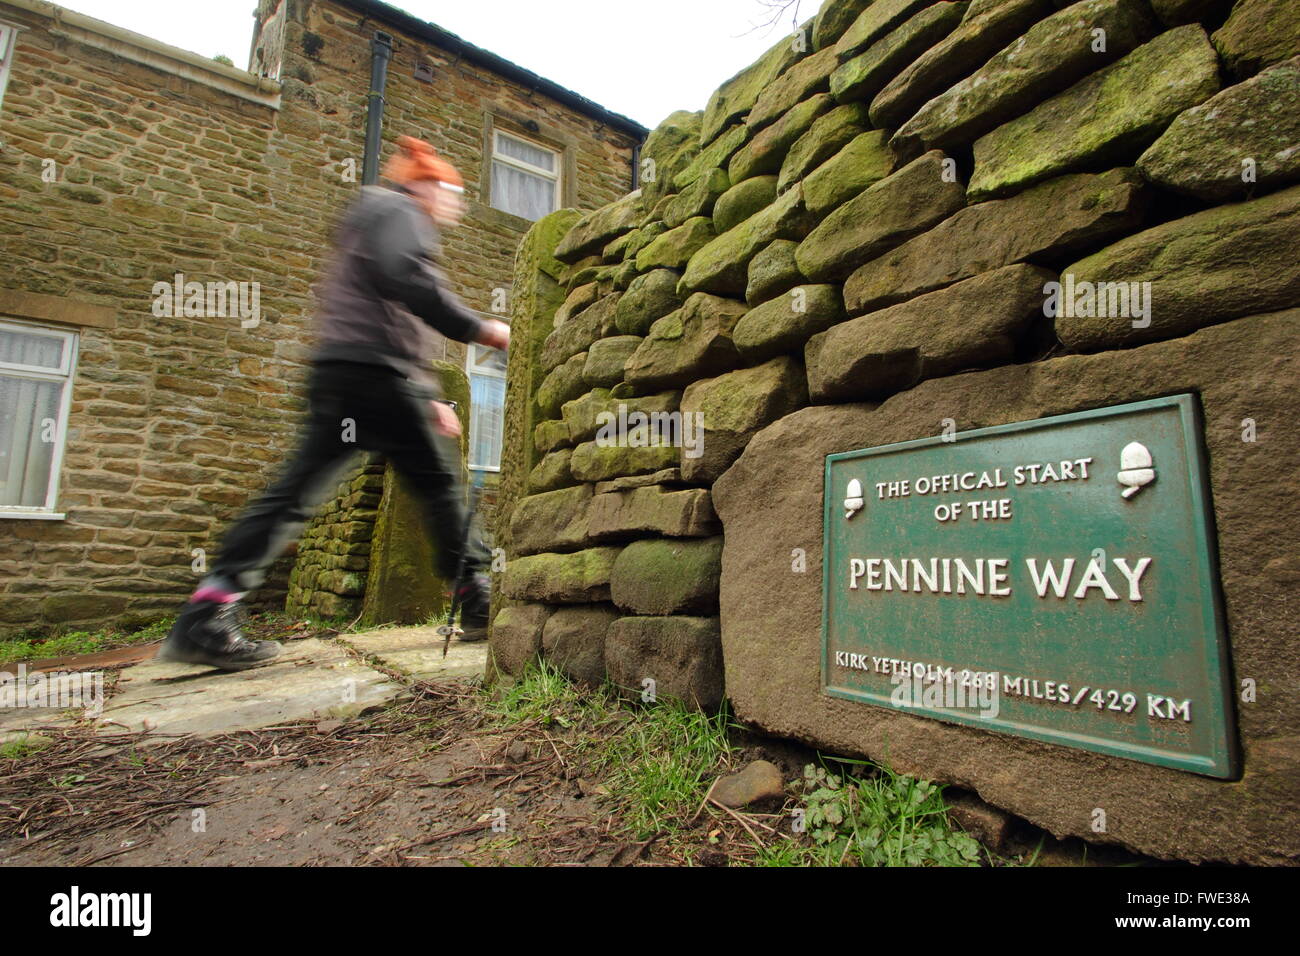 Un marcheur passe le signe marquant le début officiel de la Pennine Way à Edale dans le parc national de Peak District Derbyshire UK Banque D'Images